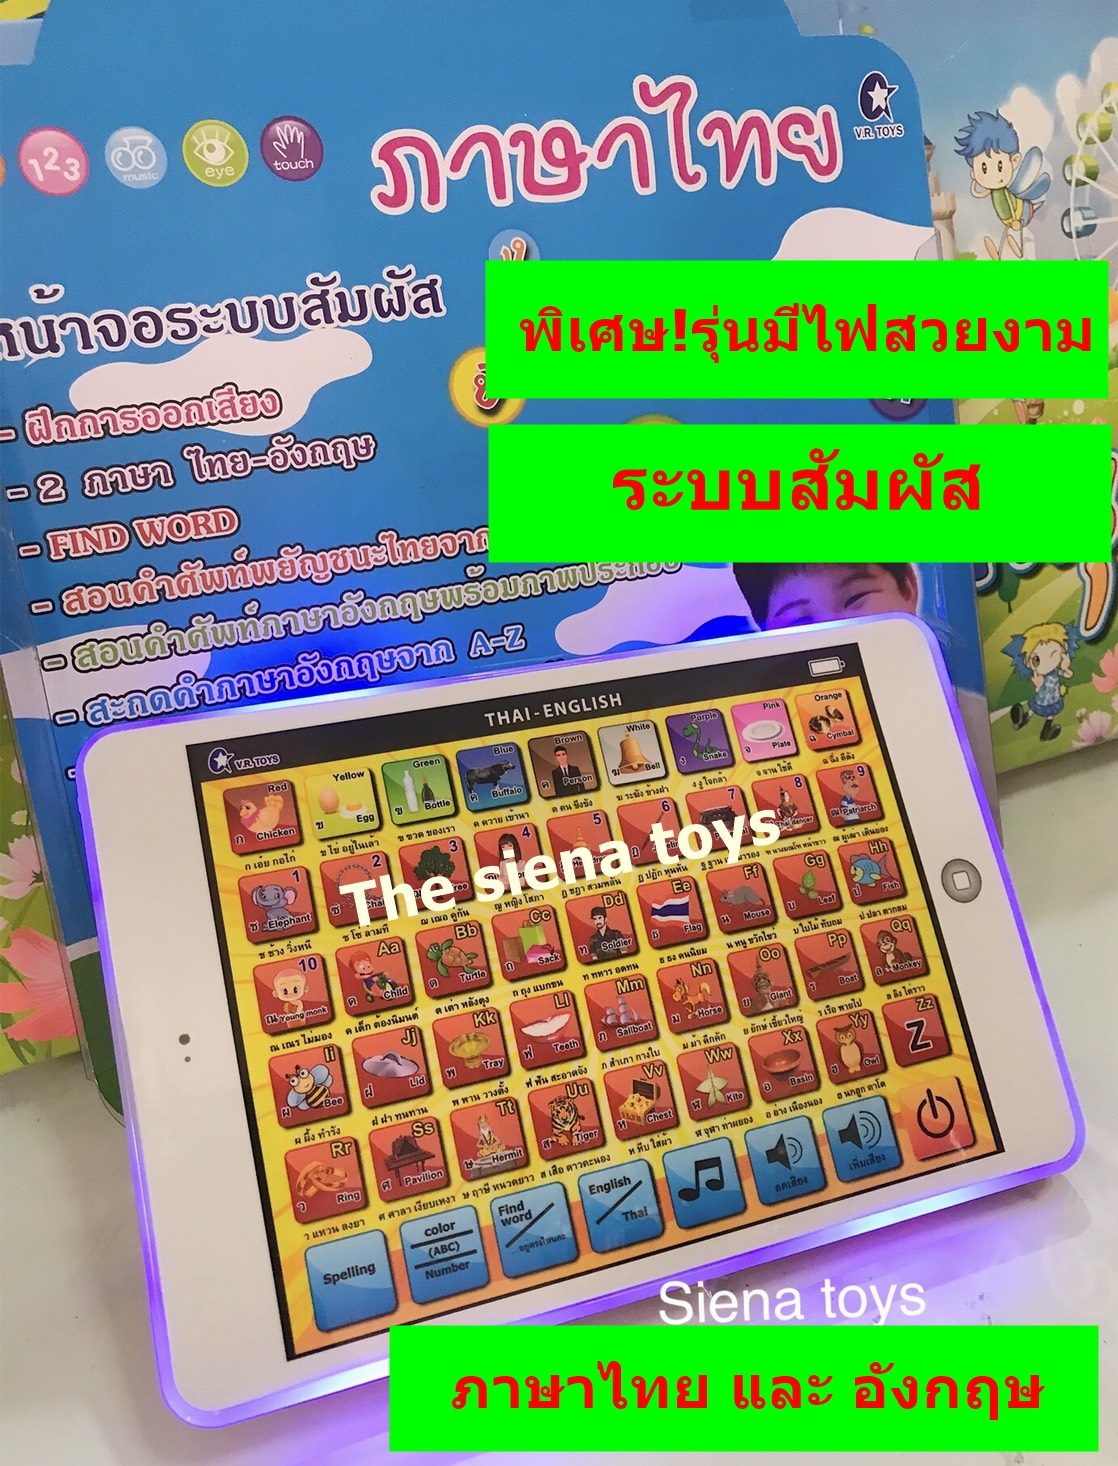 แล็บเล็ตเด็กเล่นเสริมทักษะภาษาไทยและภาษาอังกฤษ พิเศษรุ่นมีไฟ(สินค้าถ่ายจากของจริงทางร้านเชคของก่อนส่งทุกชิ้น)